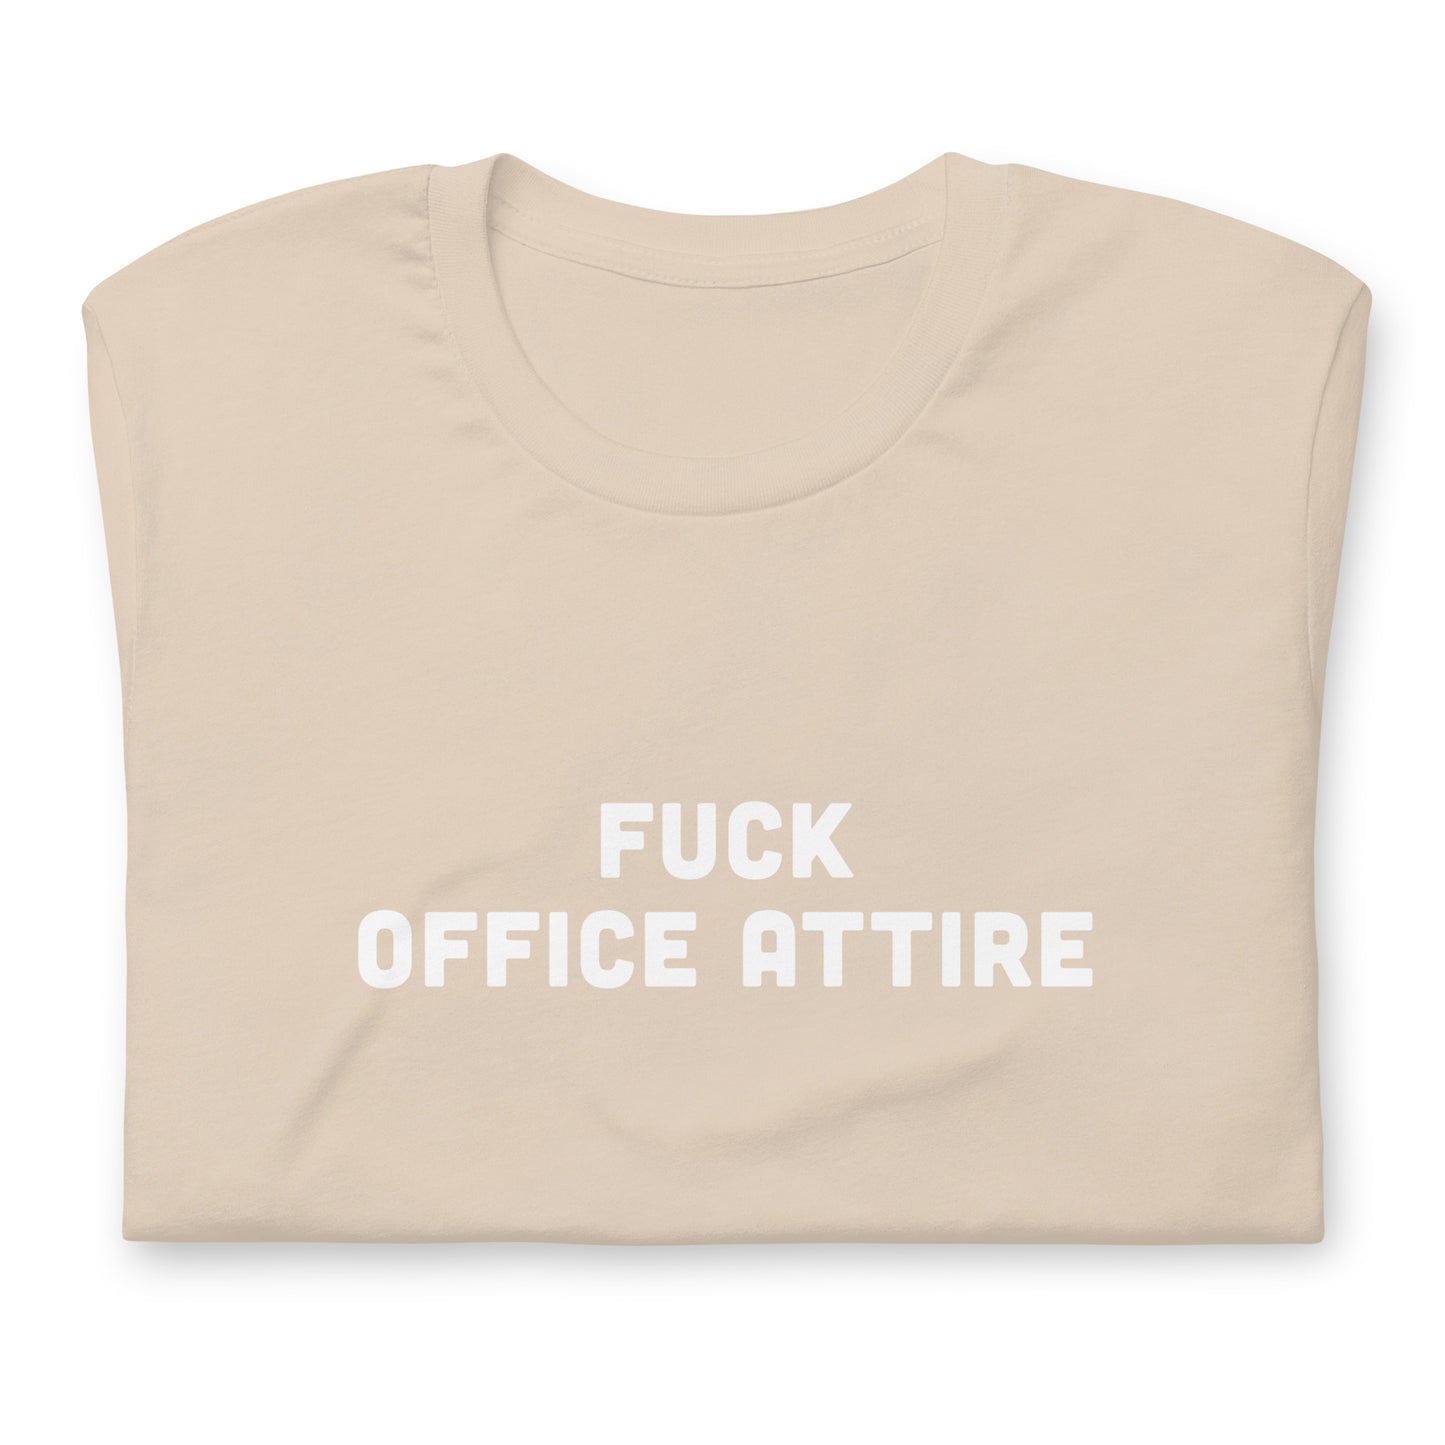 Fuck Office Attire T-Shirt Size L Color Asphalt